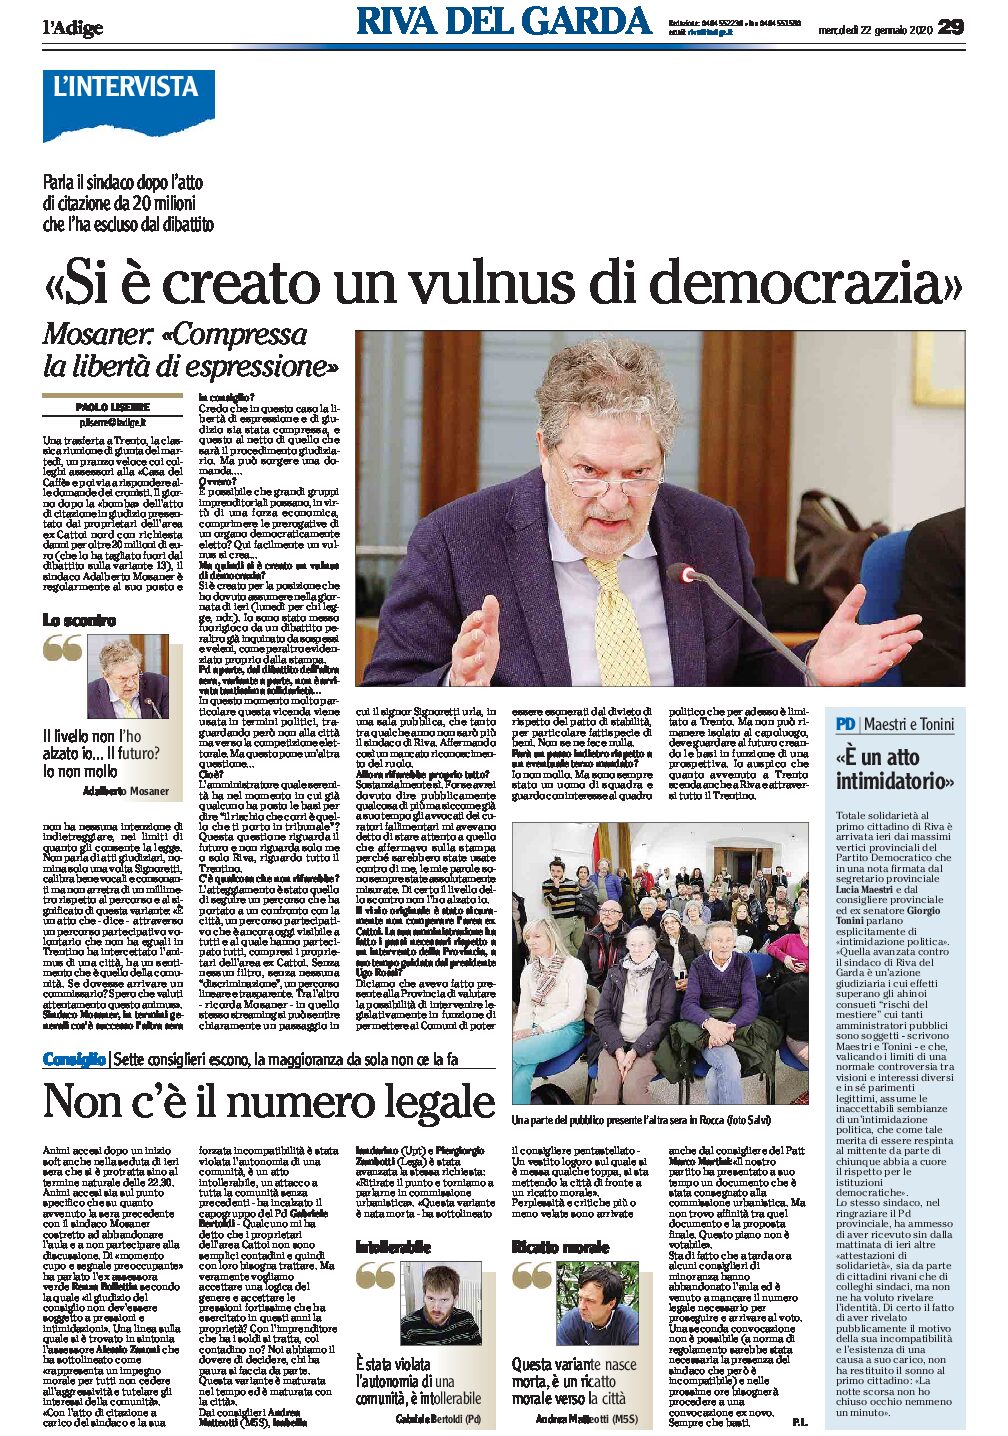 Riva, Consiglio: Mosaner “si è creato un vulnus di democrazia”, intervista al sindaco